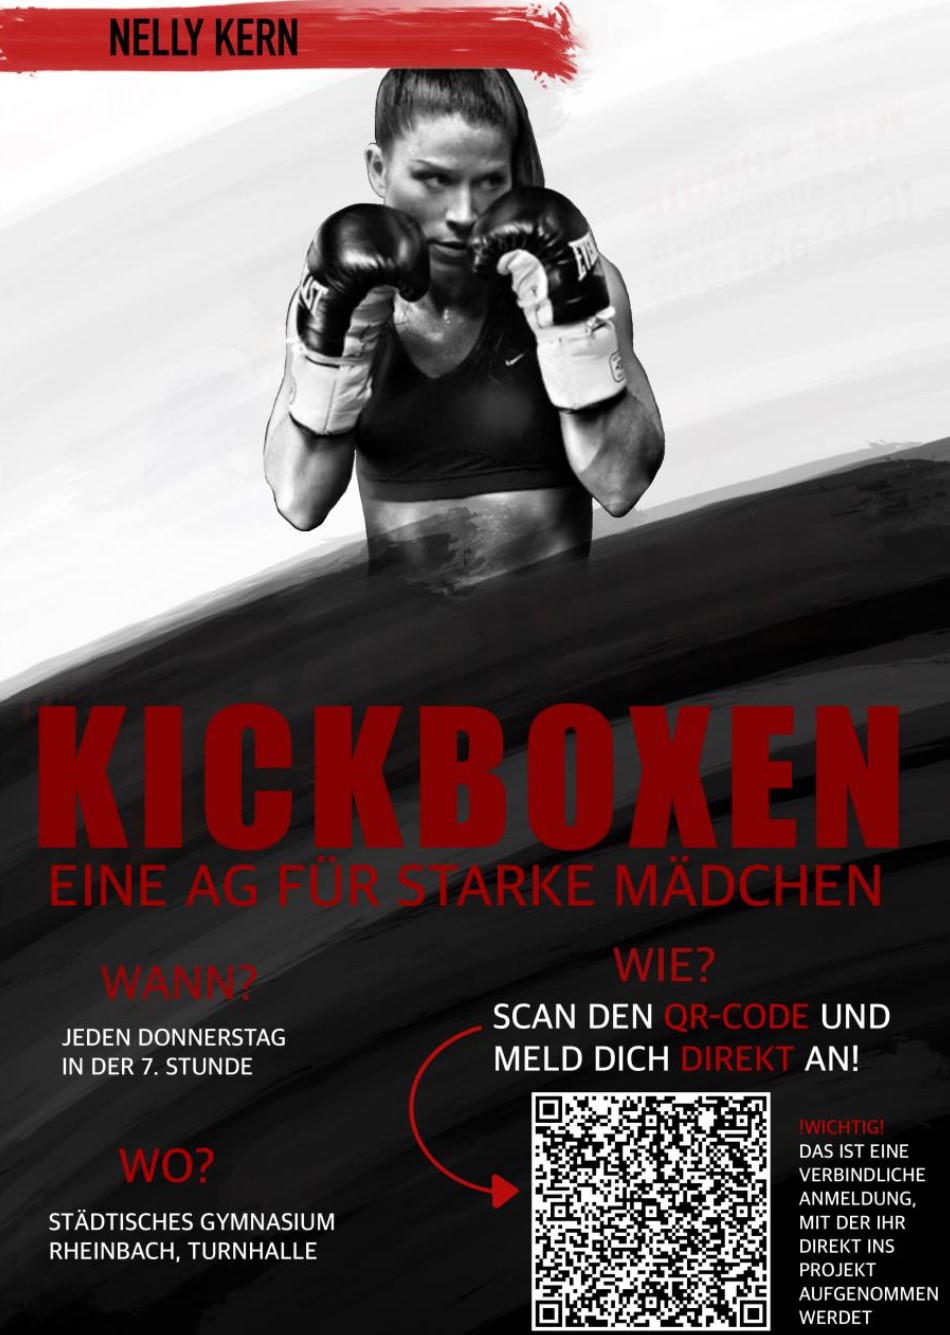 Kickbox-AG für Mädchen - von und mit Nelly Kern